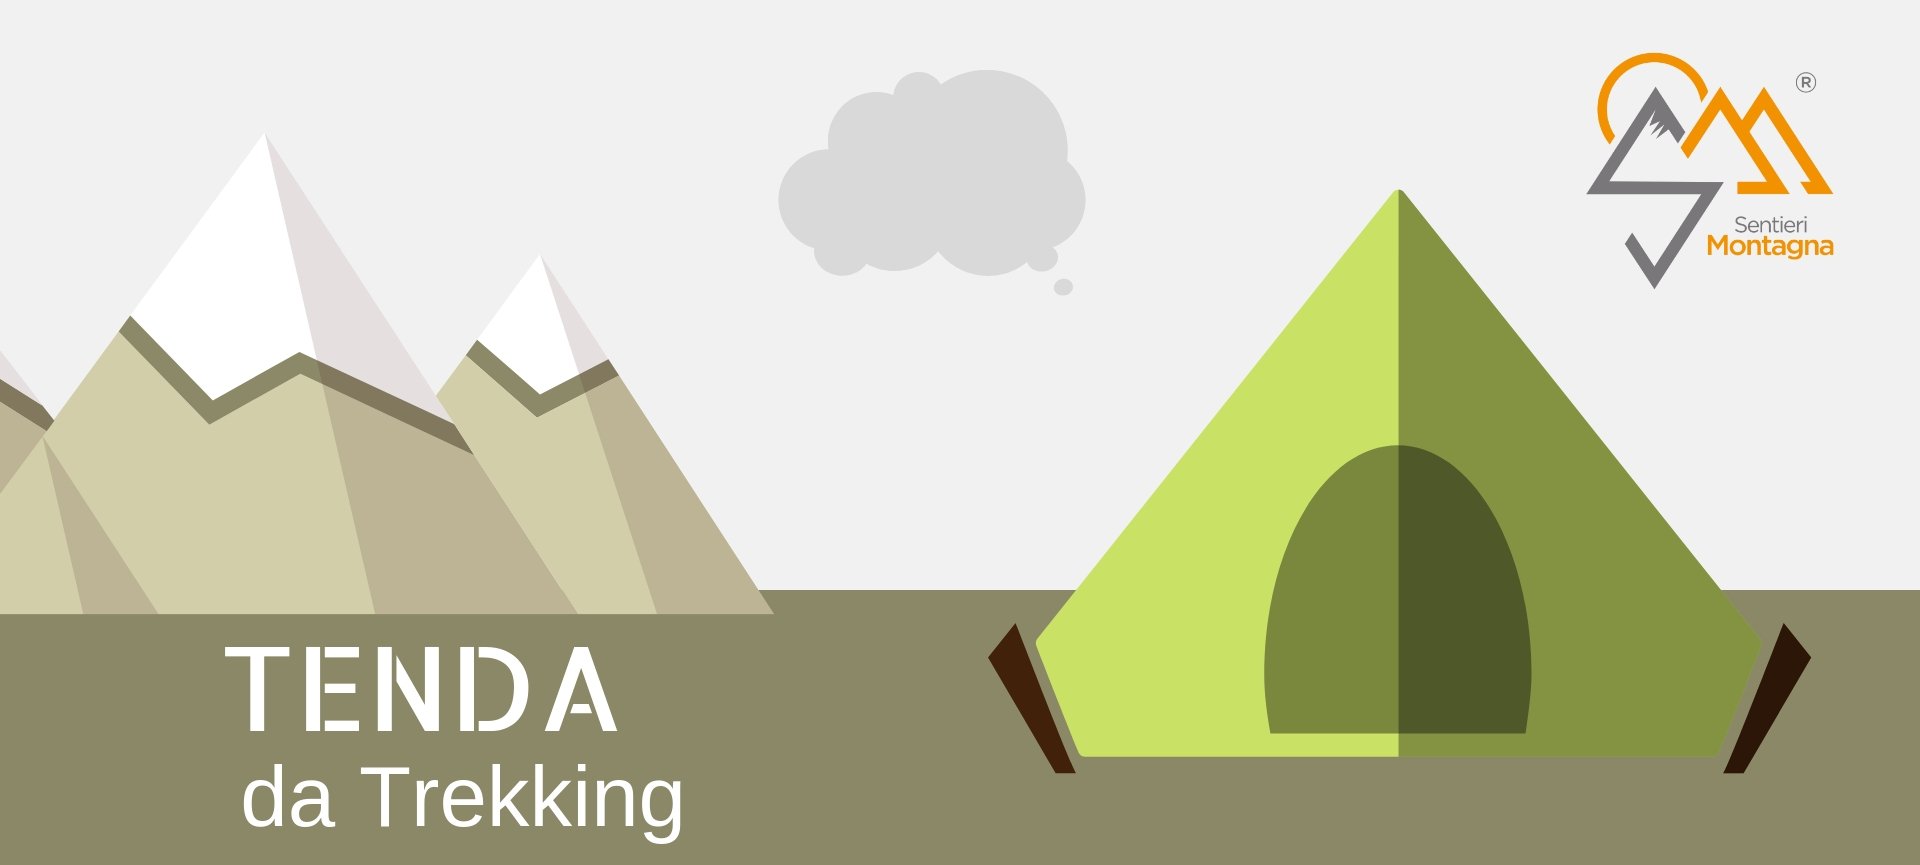 come scegliere una tenda da trekking